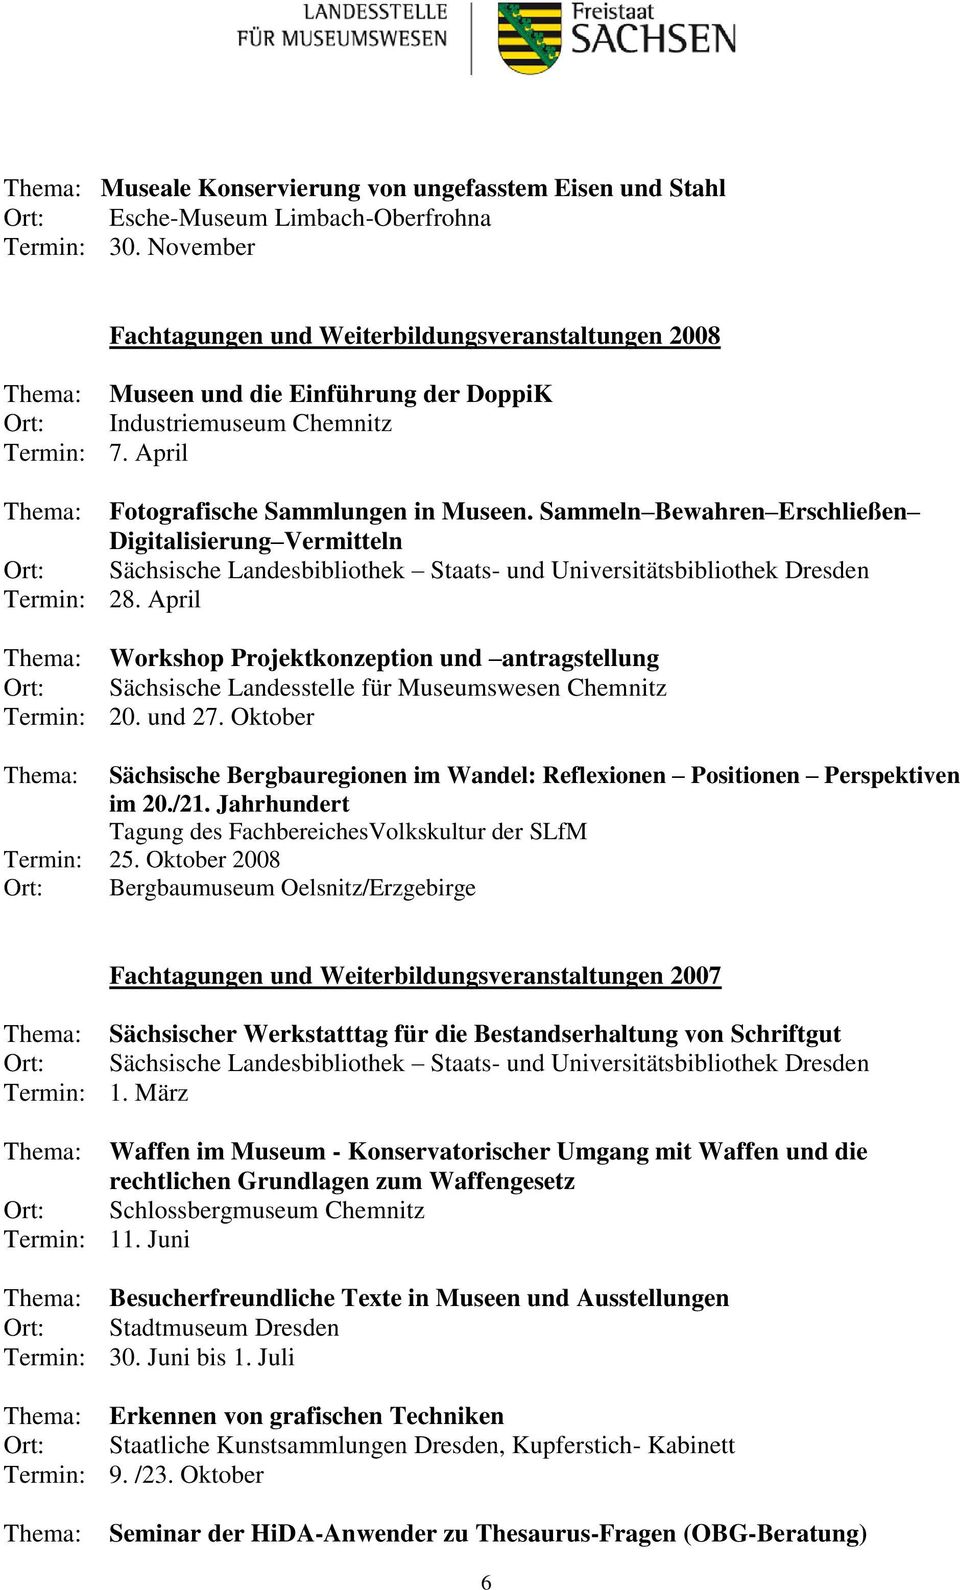 Sammeln Bewahren Erschließen Digitalisierung Vermitteln Sächsische Landesbibliothek Staats- und Universitätsbibliothek Dresden 28. April Workshop Projektkonzeption und antragstellung 20. und 27.